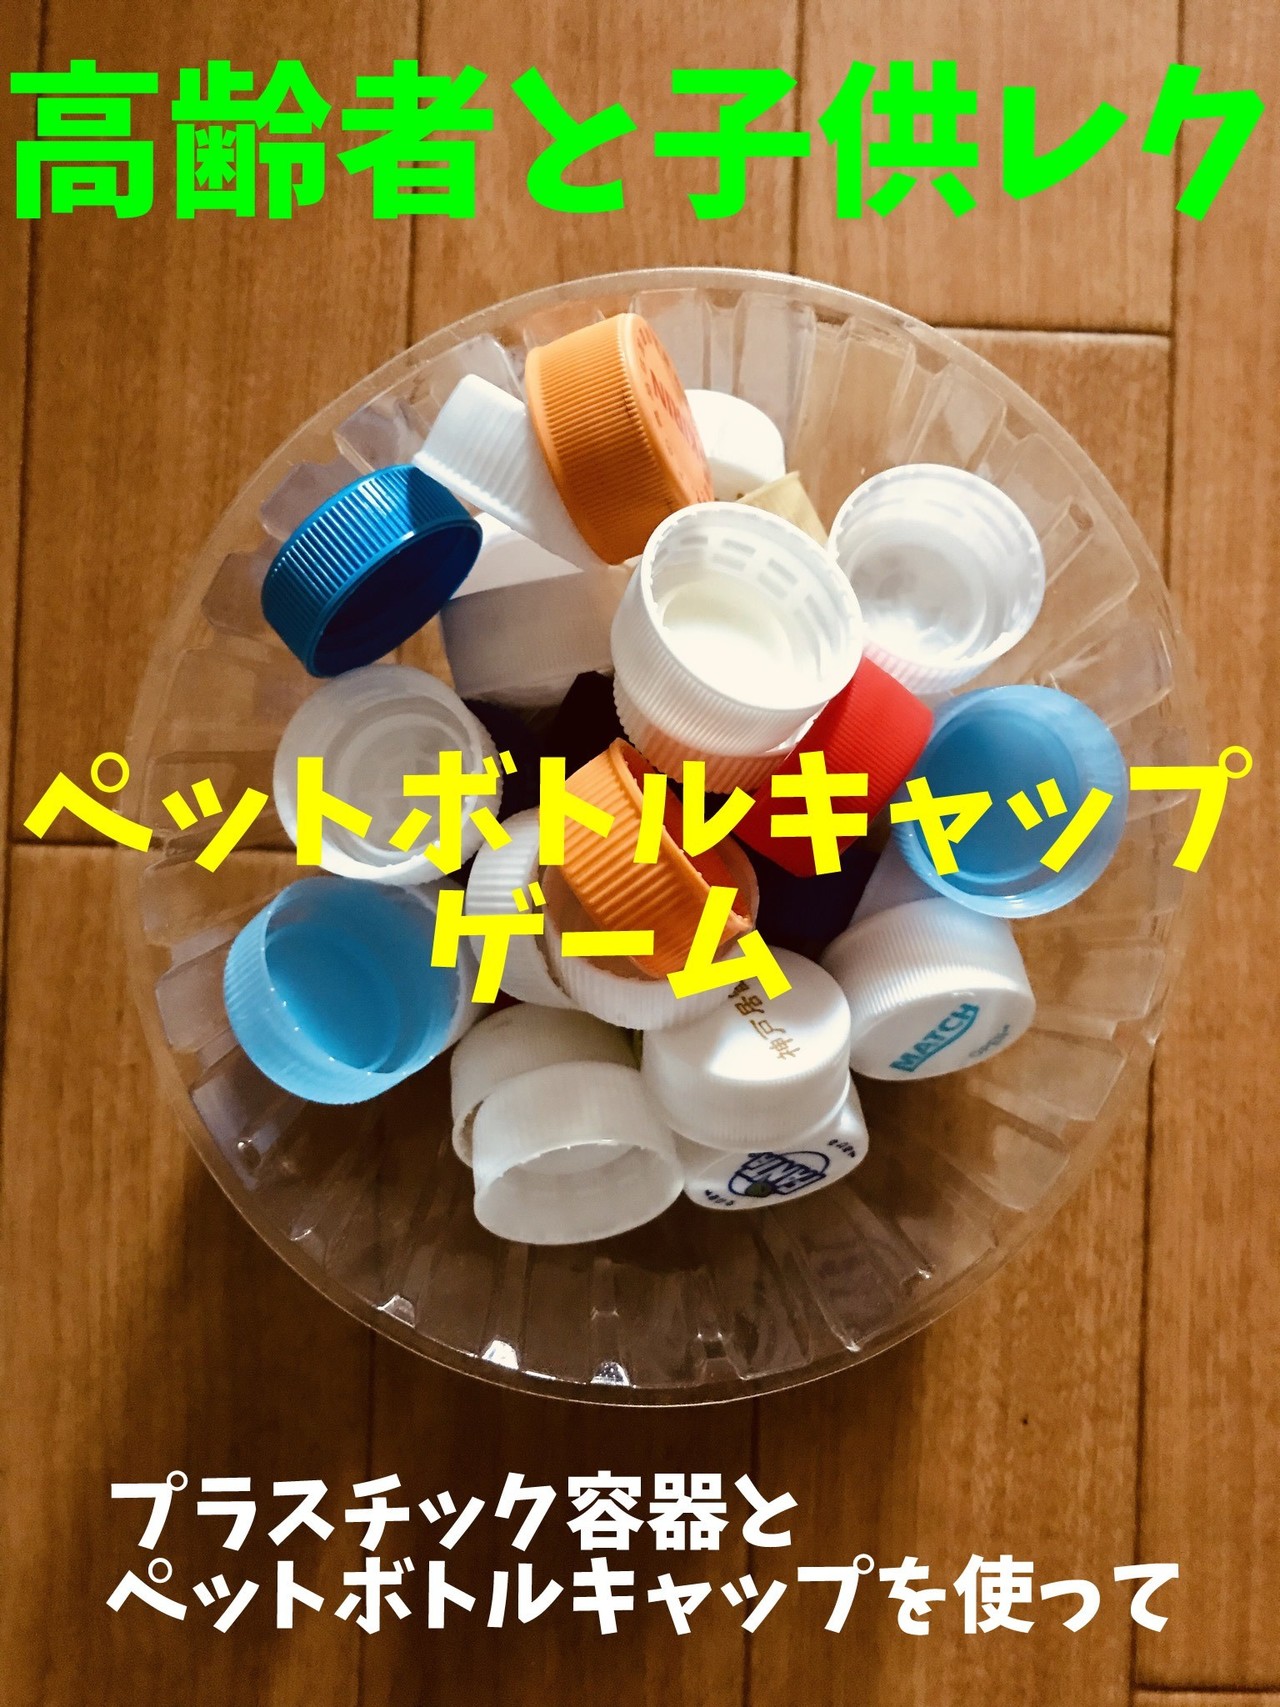 高齢者と子供向け室内レクリエーション プラスチック容器を使って ペットボトルキャップ投げゲーム ソロレクリエーション介護士のchibiike Note